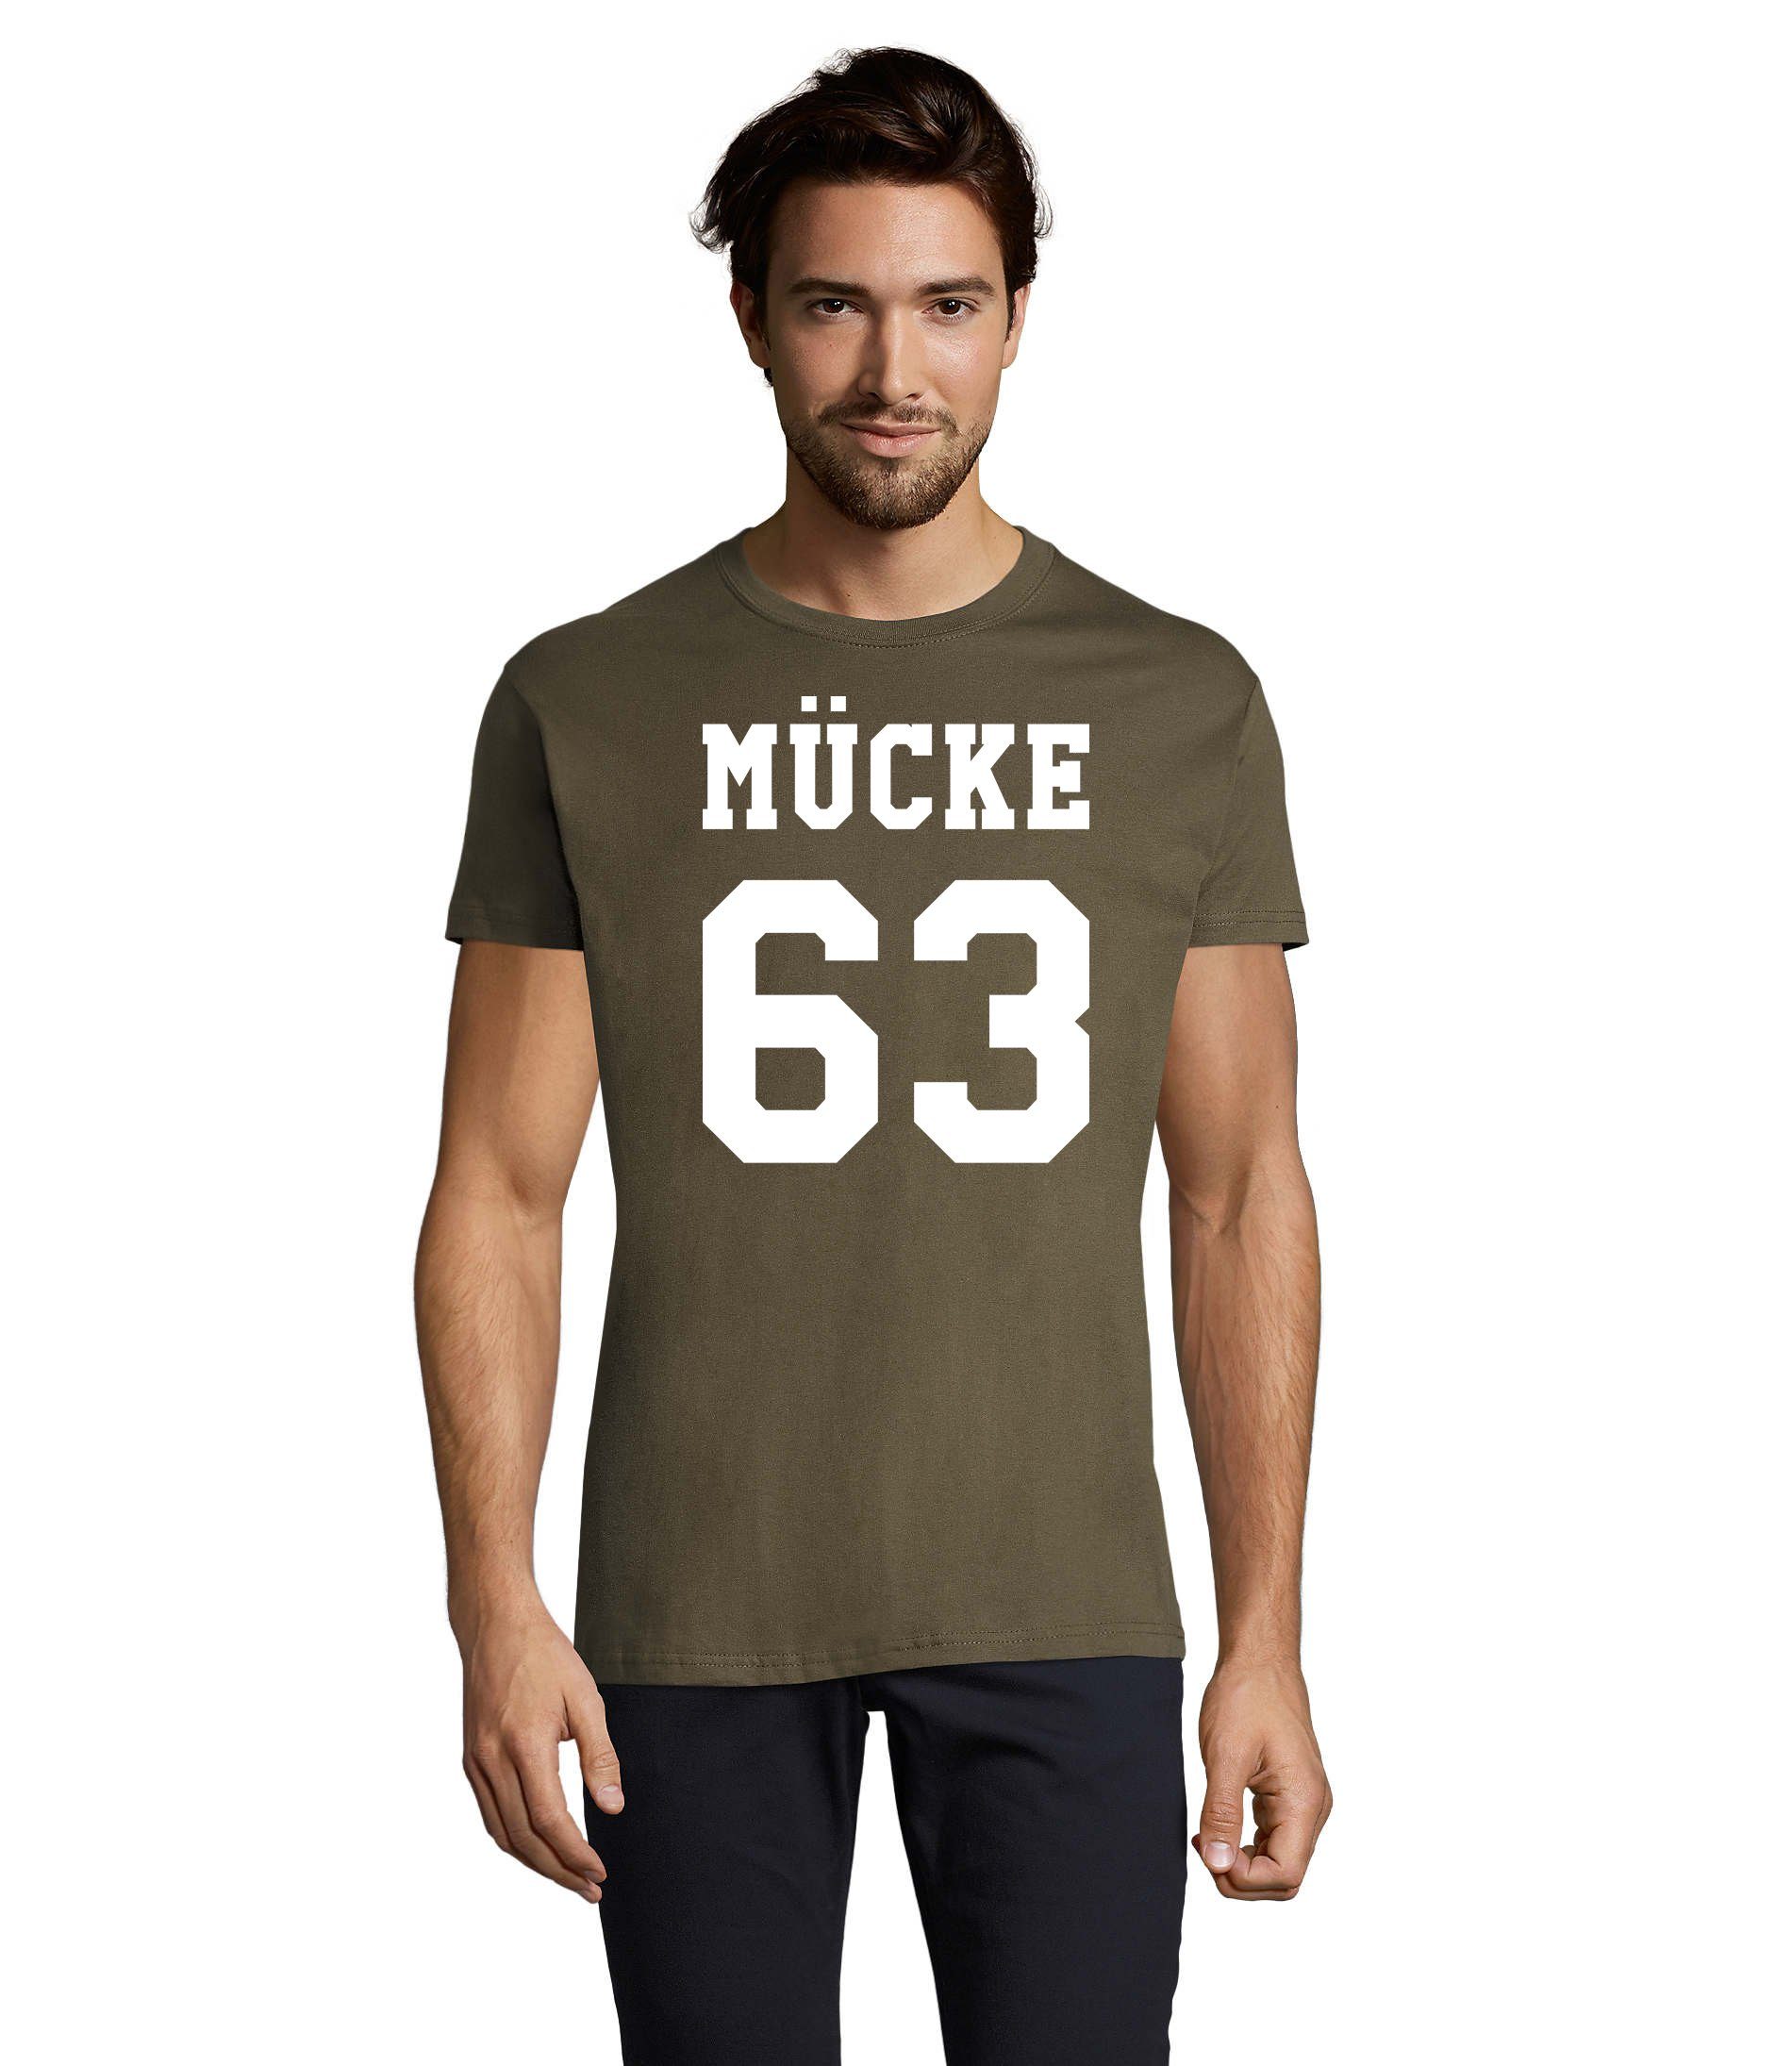 Blondie & Brownie T-Shirt in Mücke Bulldozer Logo Spruch Army Herren 63 Film TV Übergrößen Print